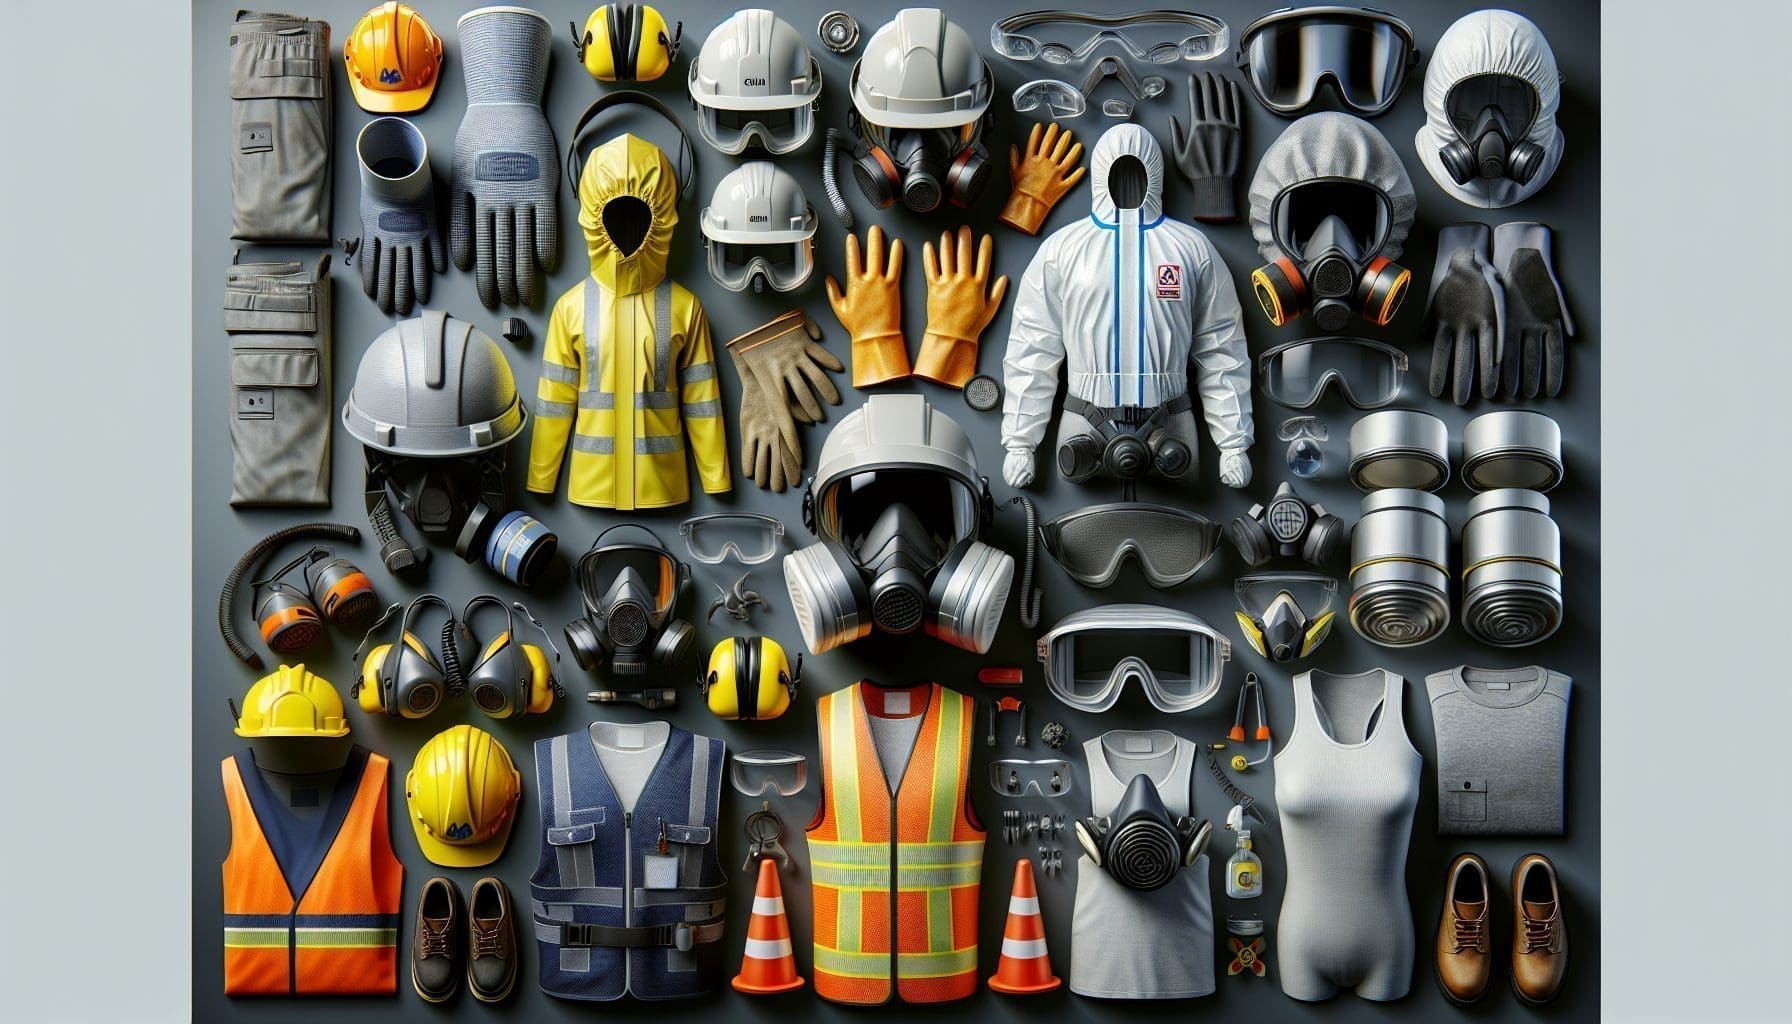 equipements protection individuelle securite travail haute definition detaillee casques gants combinaisons masques lunettes protecteurs chaussures.jpeg